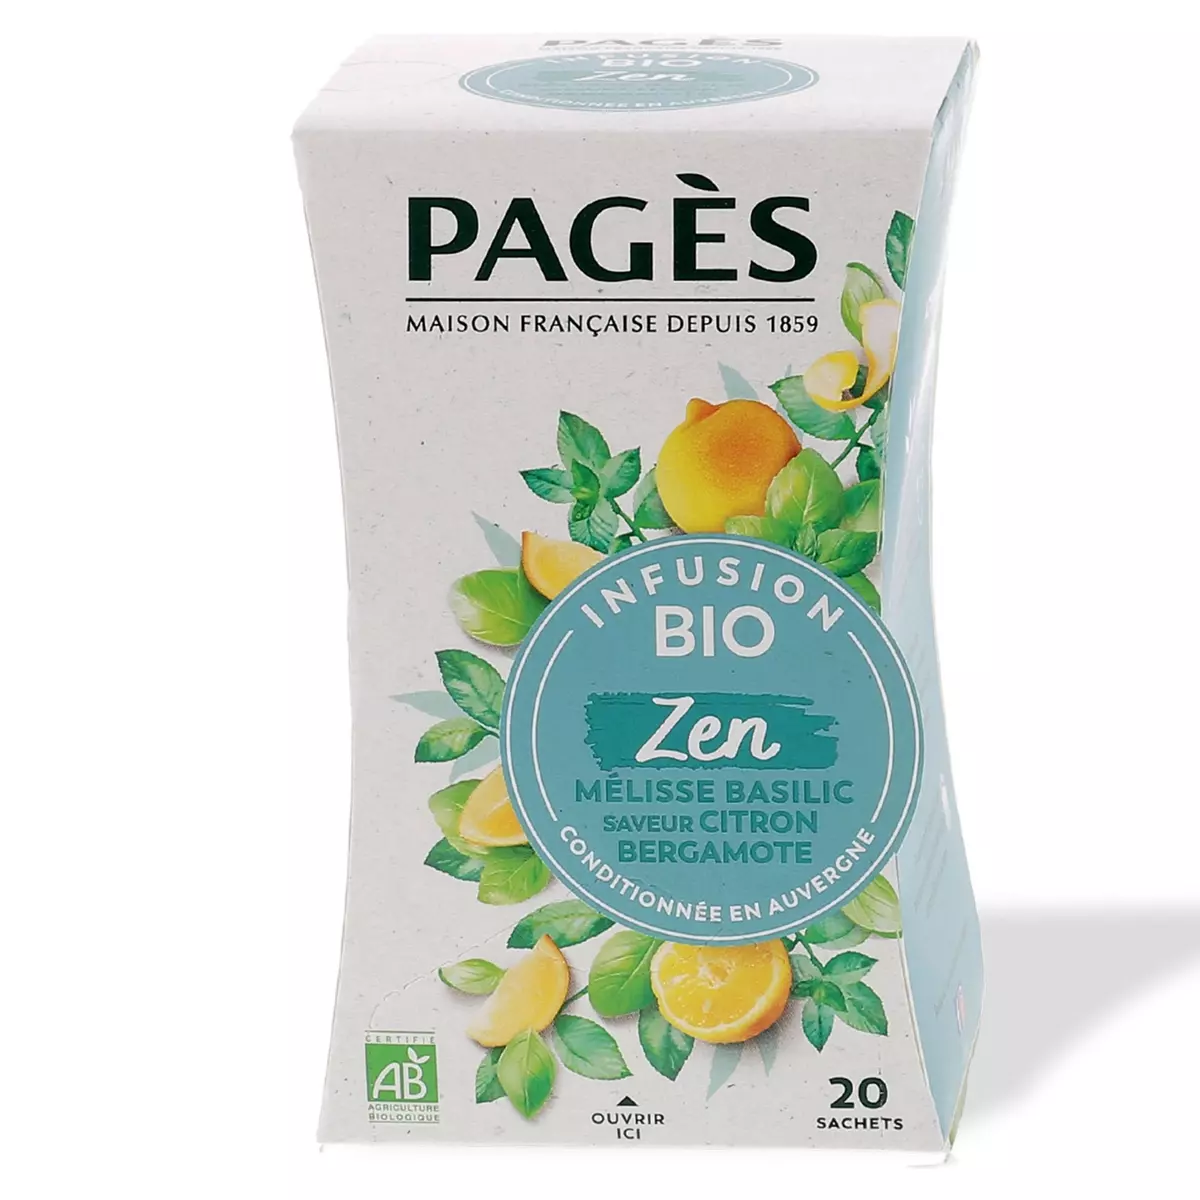 PAGES Zen infusion bio mélisse basilic saveur citron bergamote 20 sachets 30g